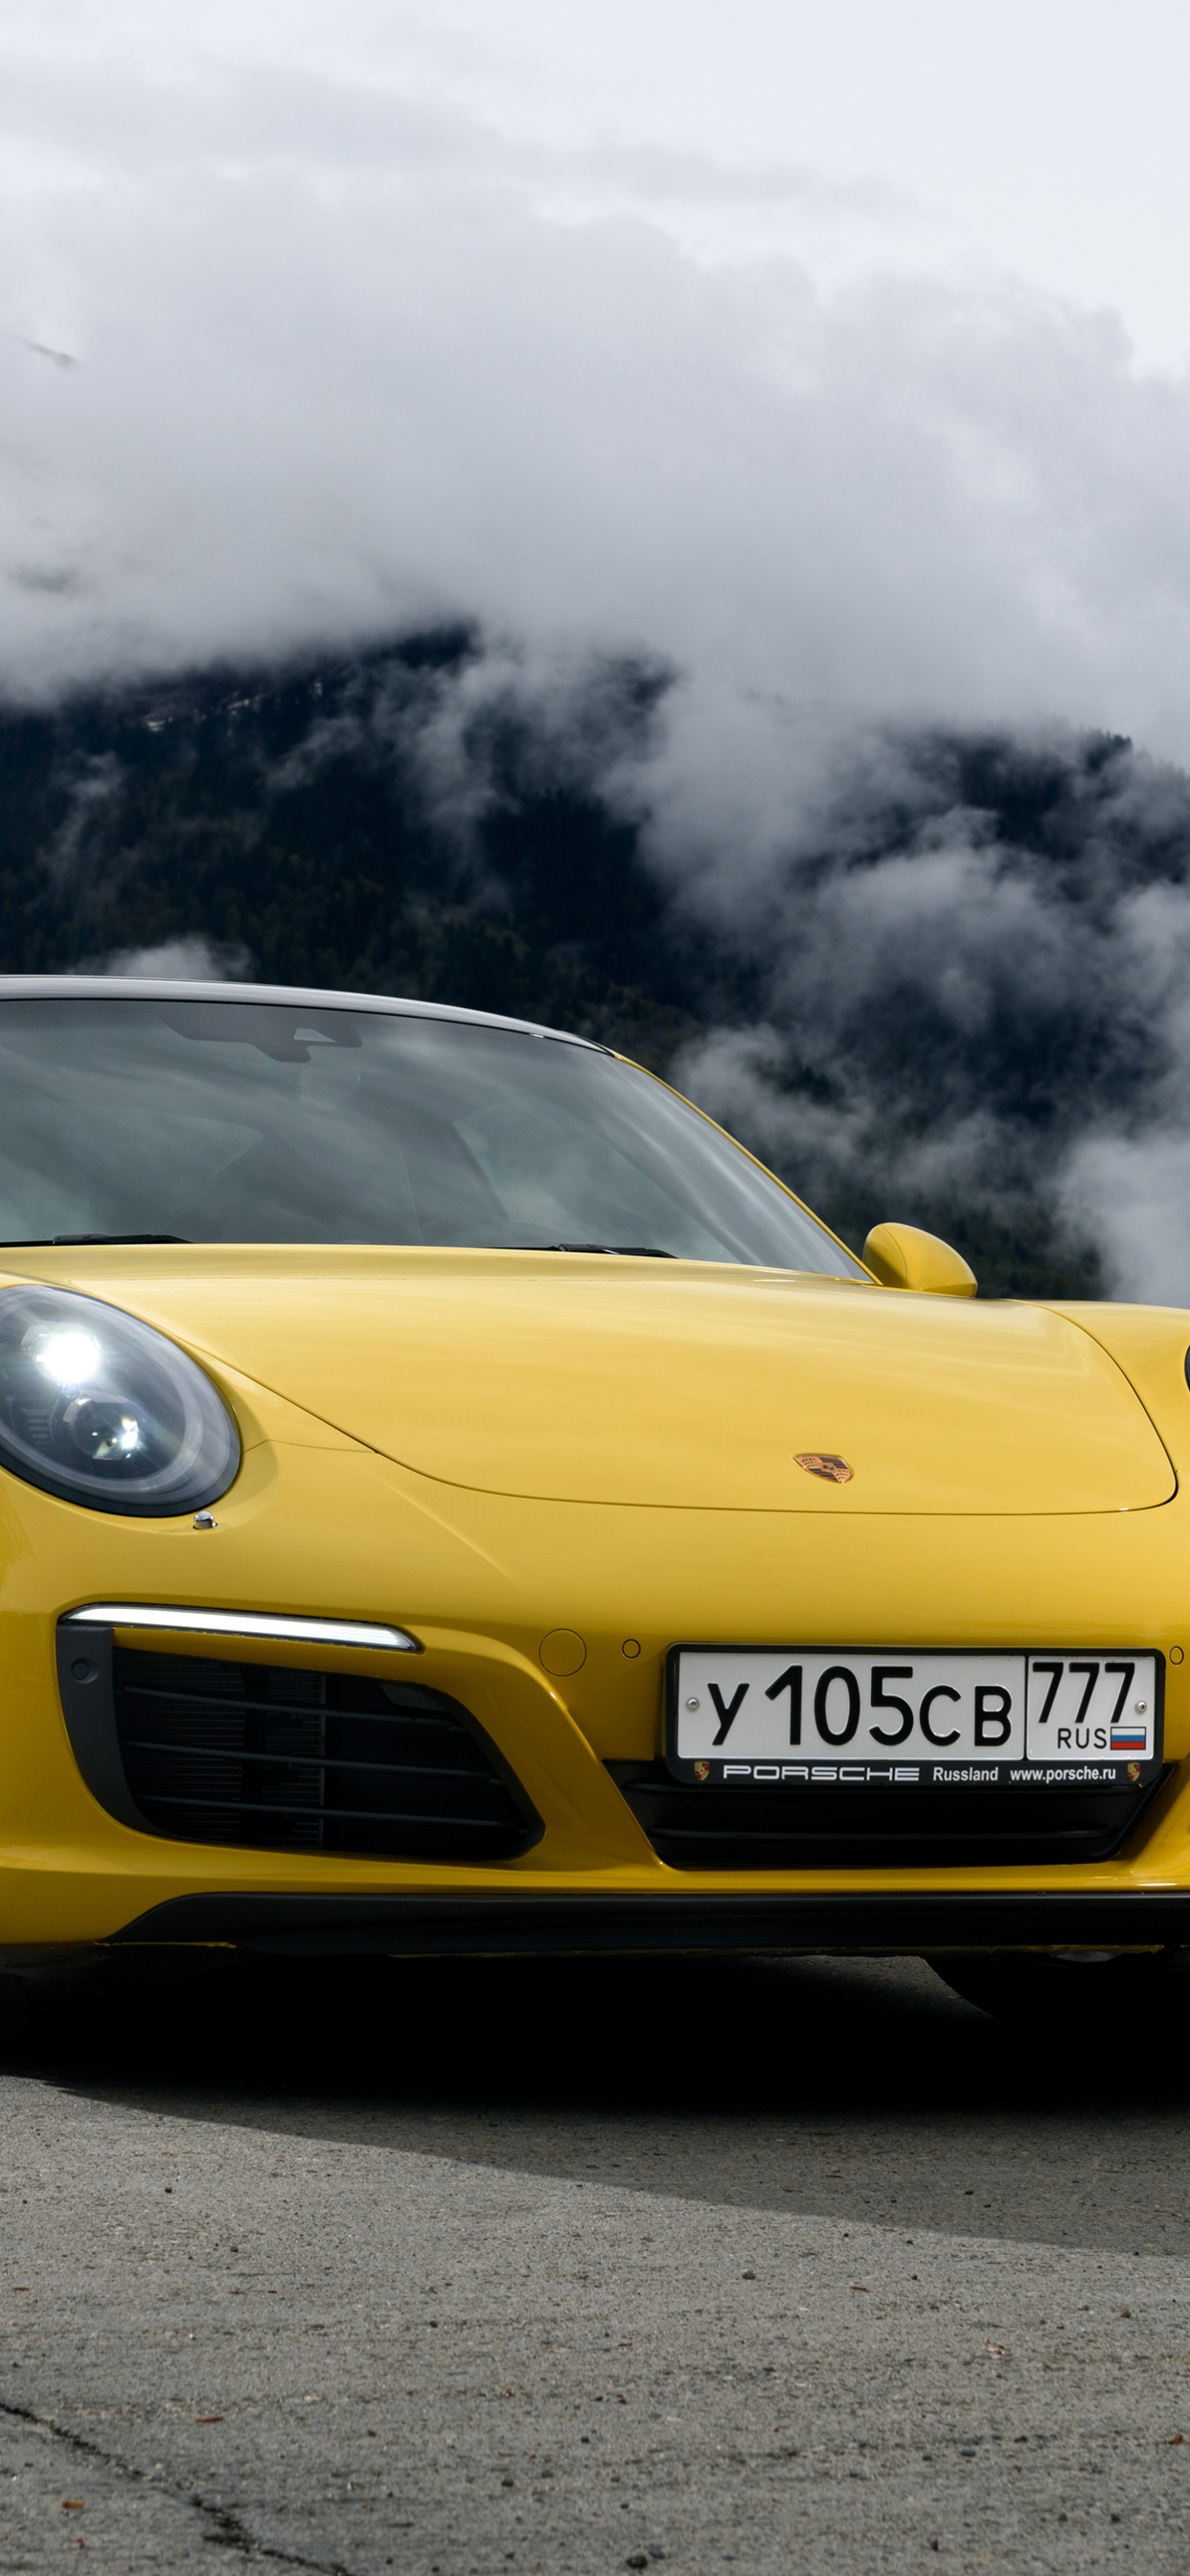 Yellow Porsche 911 on Black Asphalt Road Under Gray Clouds. Wallpaper in 1242x2688 Resolution